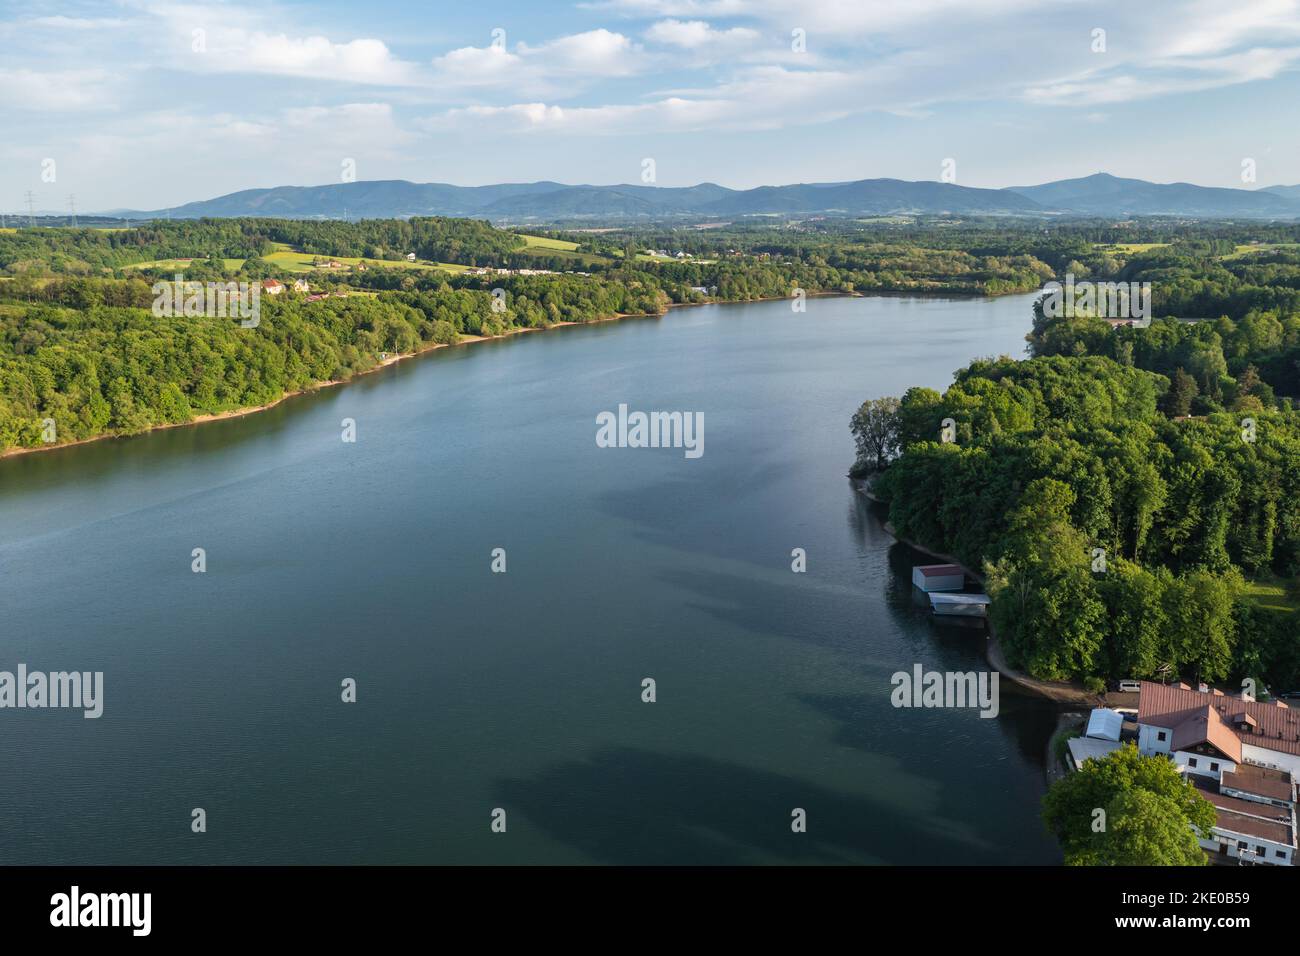 Vista aérea del embalse de Terlicko en el río Stonavka en el municipio de Terlicko en el distrito de Karvina, región de Moravia-Silesia, República Checa Foto de stock